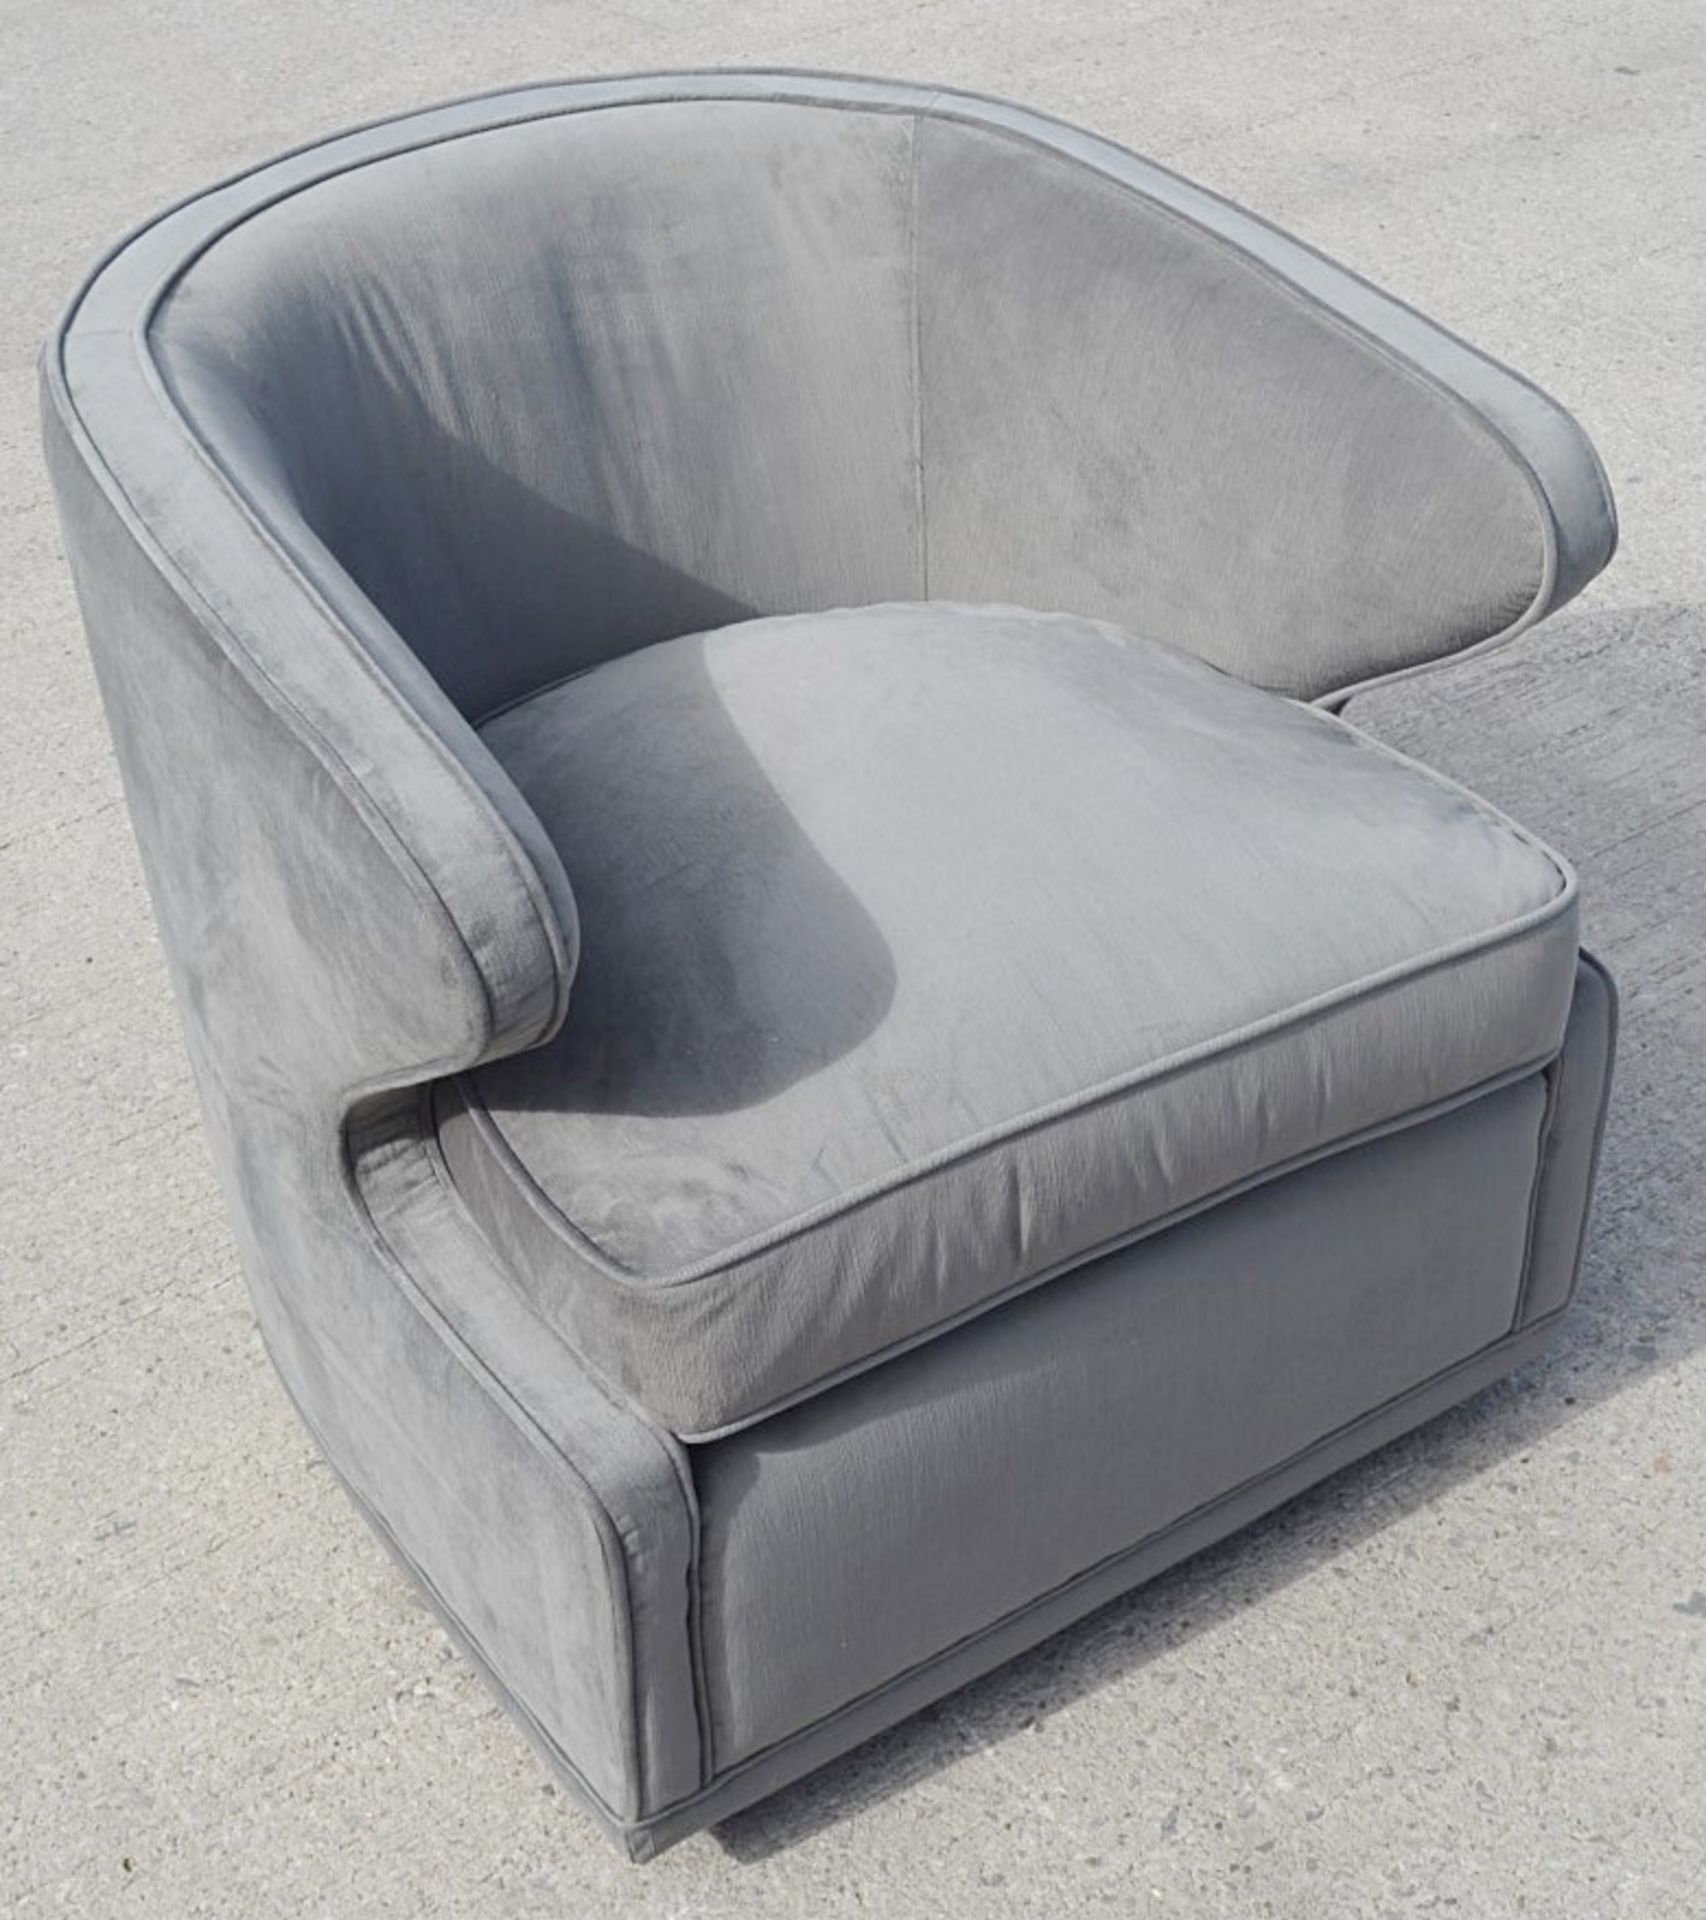 1 x EICHHOLTZ 'Dorset' Velvet Upholstered Chair In Granite Grey With Swivel Base - Ref: 5836384(B)/ - Image 5 of 13